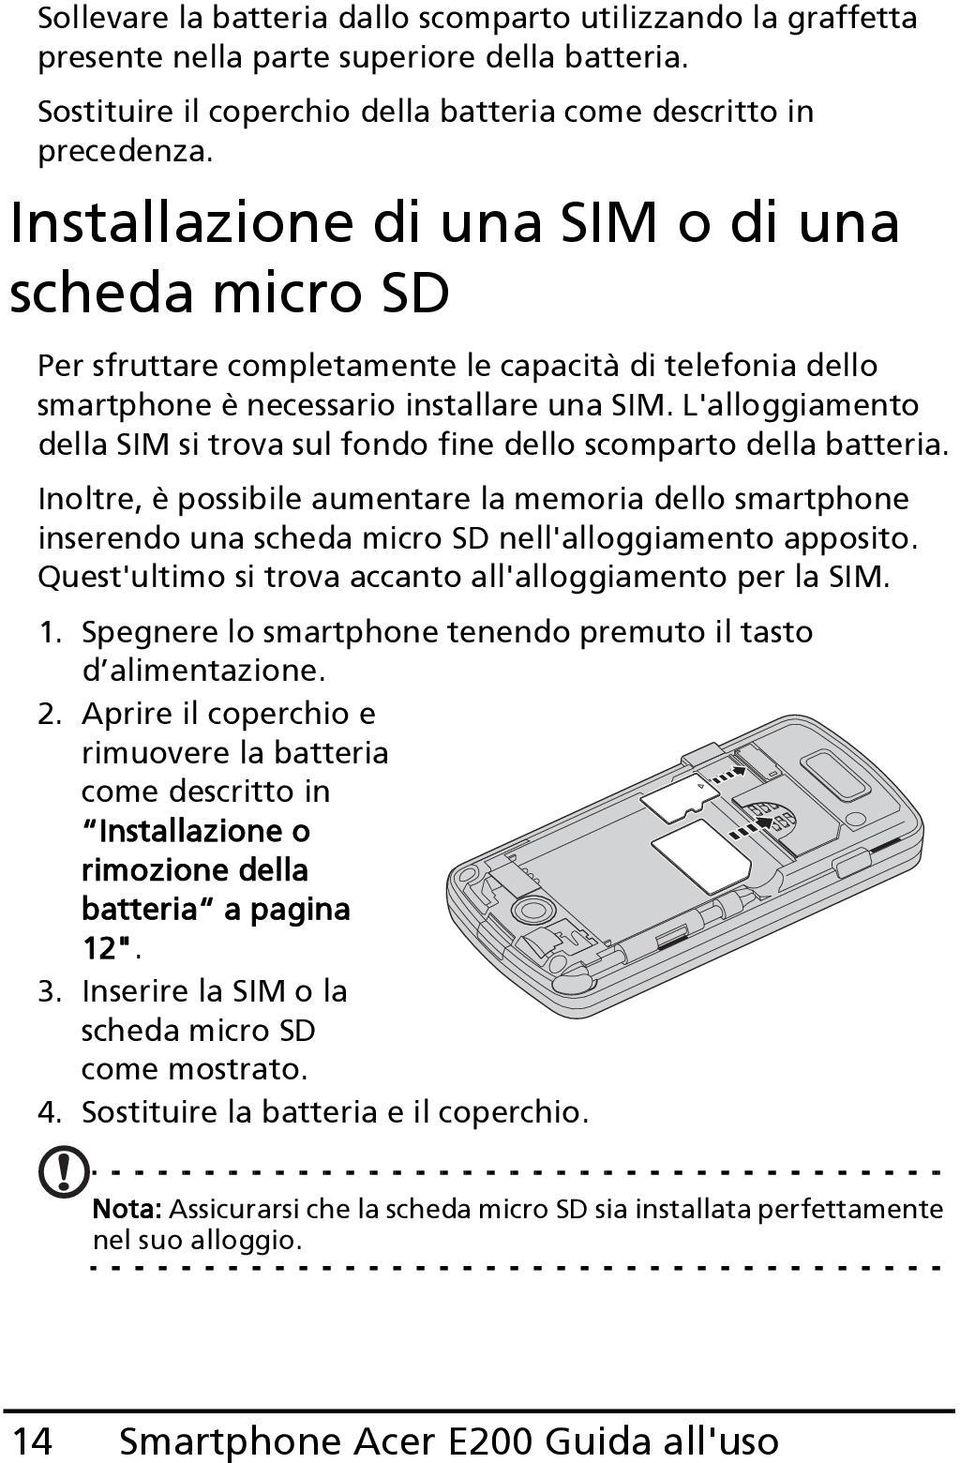 L'alloggiamento della SIM si trova sul fondo fine dello scomparto della batteria. Inoltre, è possibile aumentare la memoria dello smartphone inserendo una scheda micro SD nell'alloggiamento apposito.